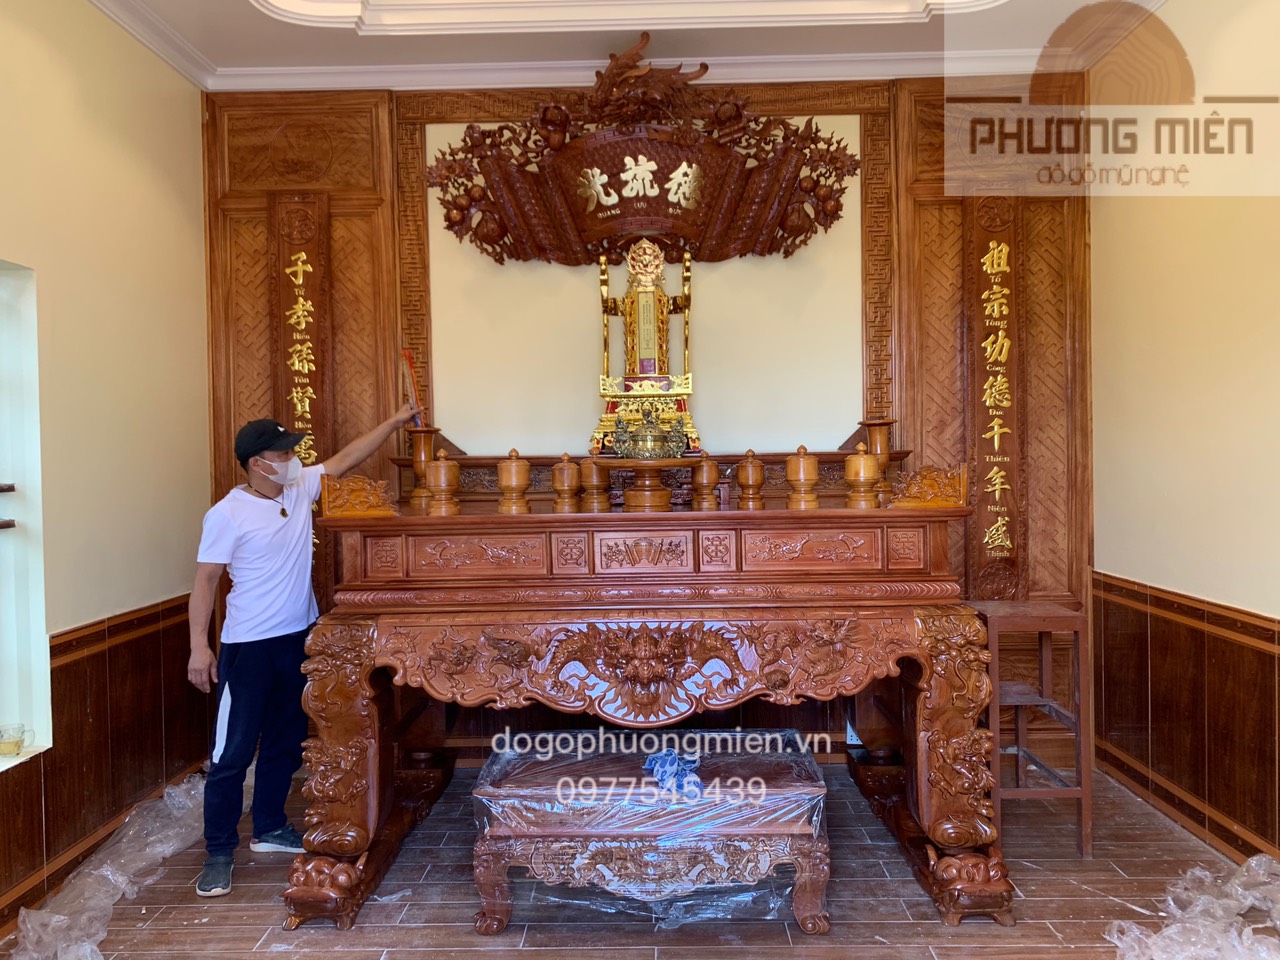 Mẫu phòng thờ gỗ đẹp tại Thanh Hoá.